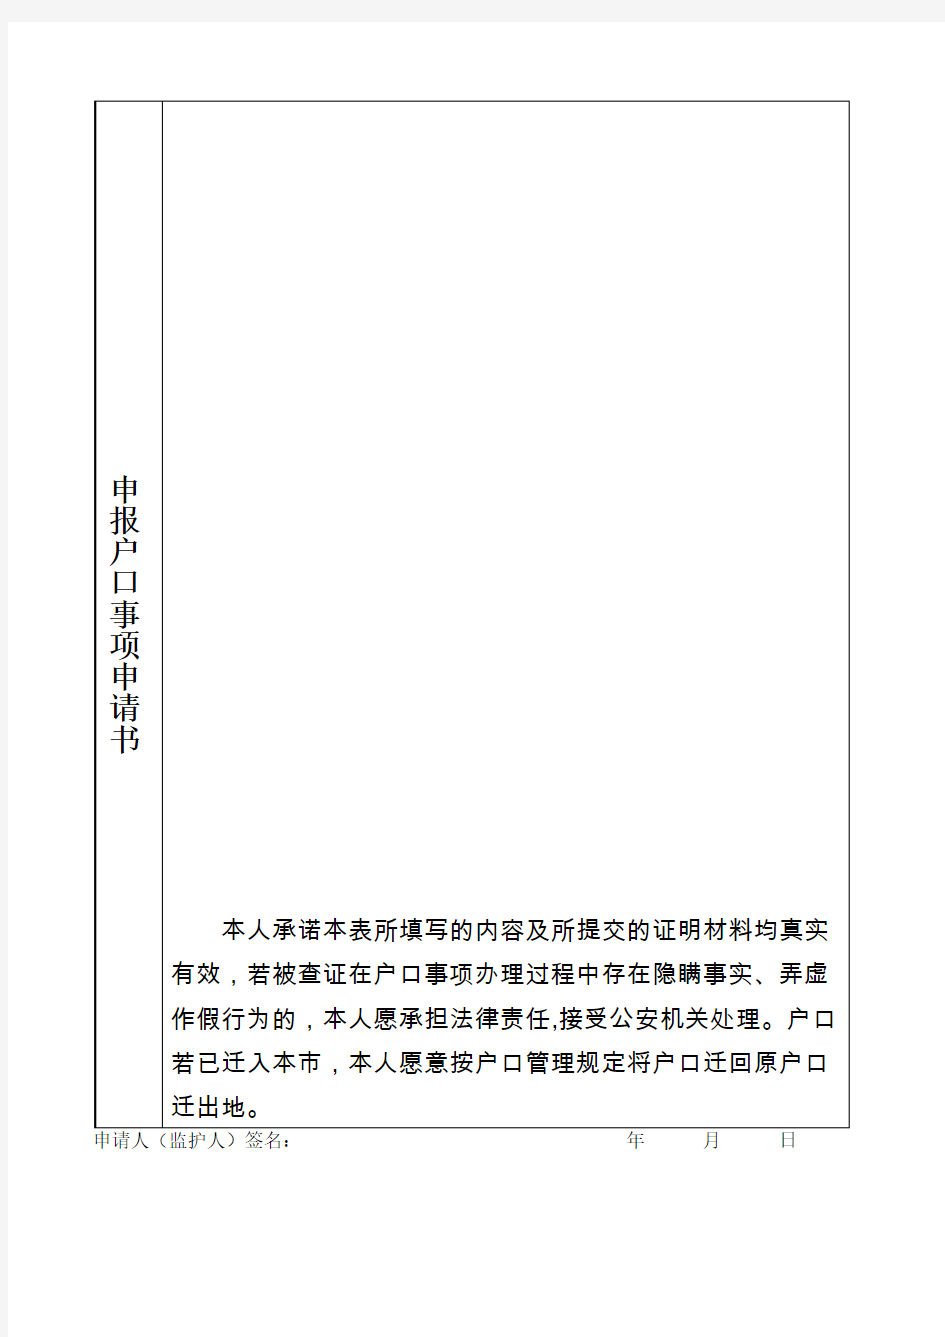 上海市外省市户口迁沪落户审批申请表(空白表格)